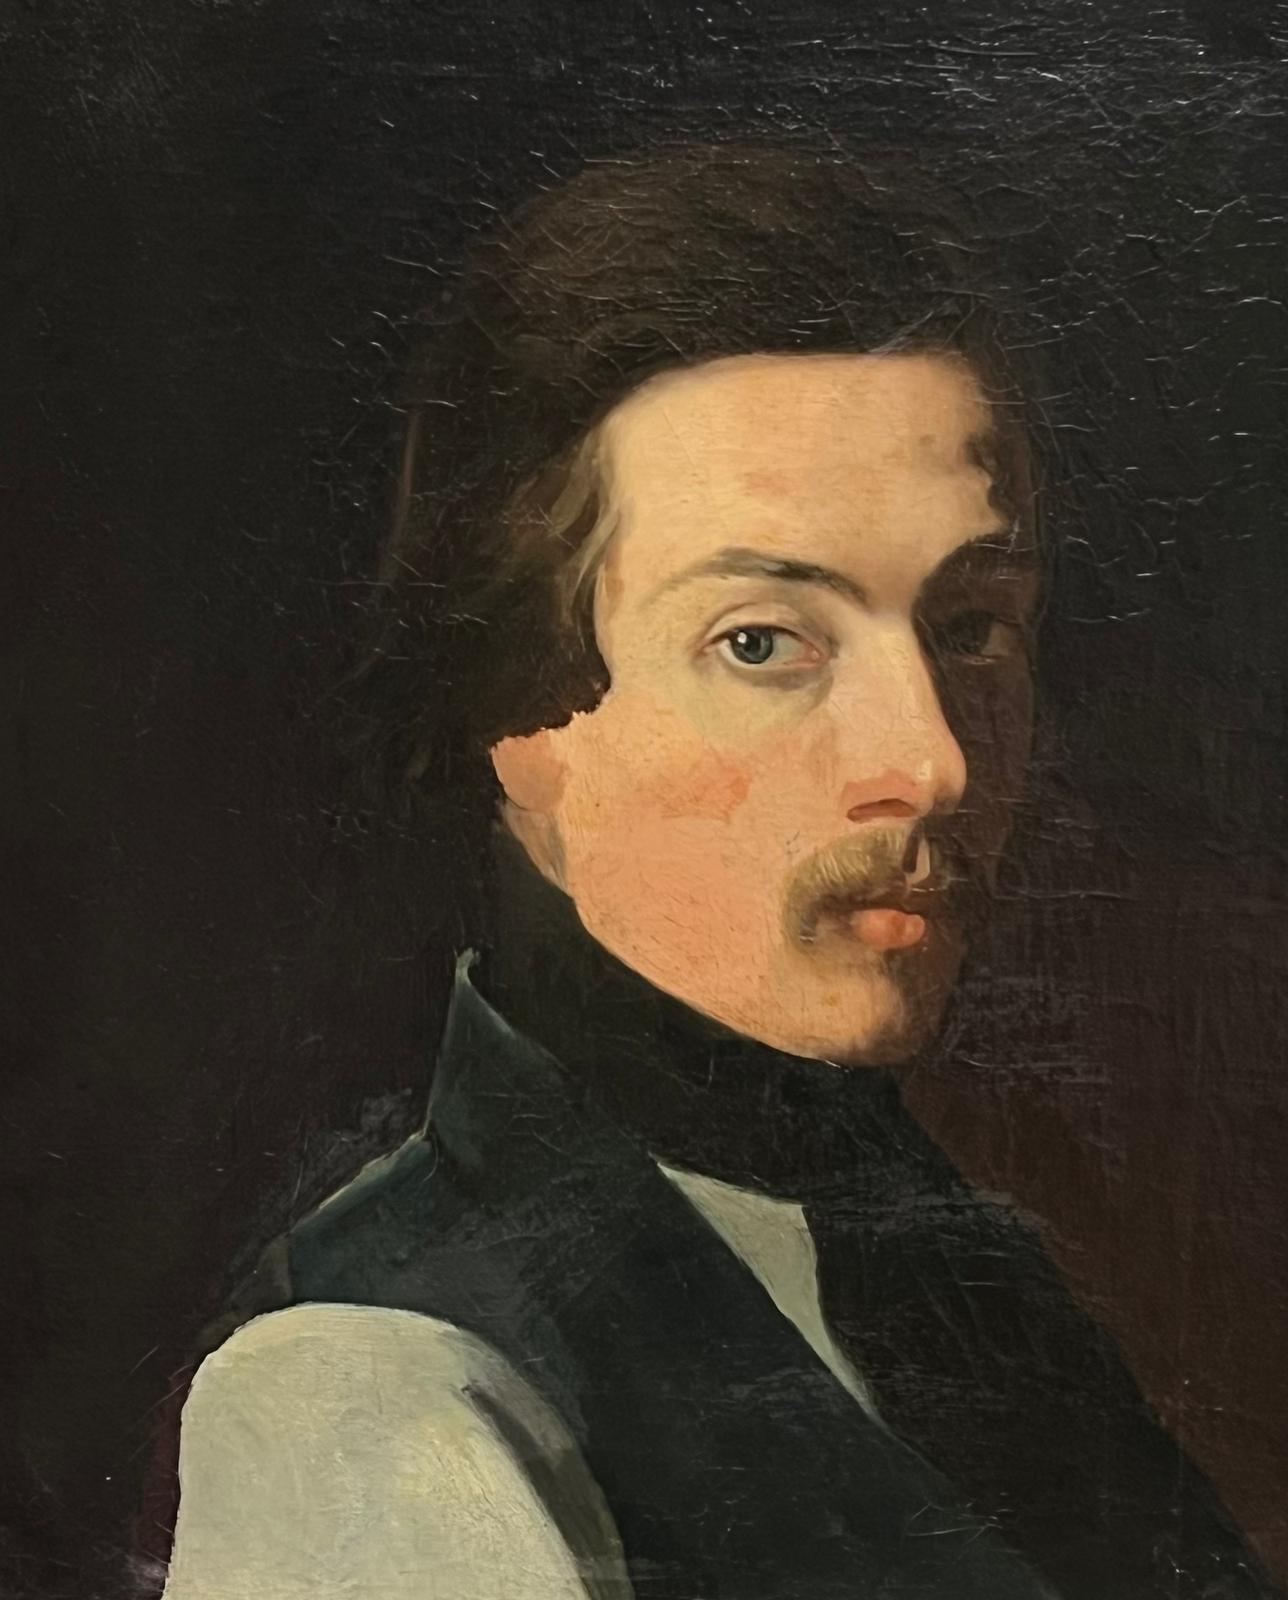 Fein 1870's Französisch Porträt eines Mannes mit Schnurrbart Möglicherweise Self-Portrait Künstler